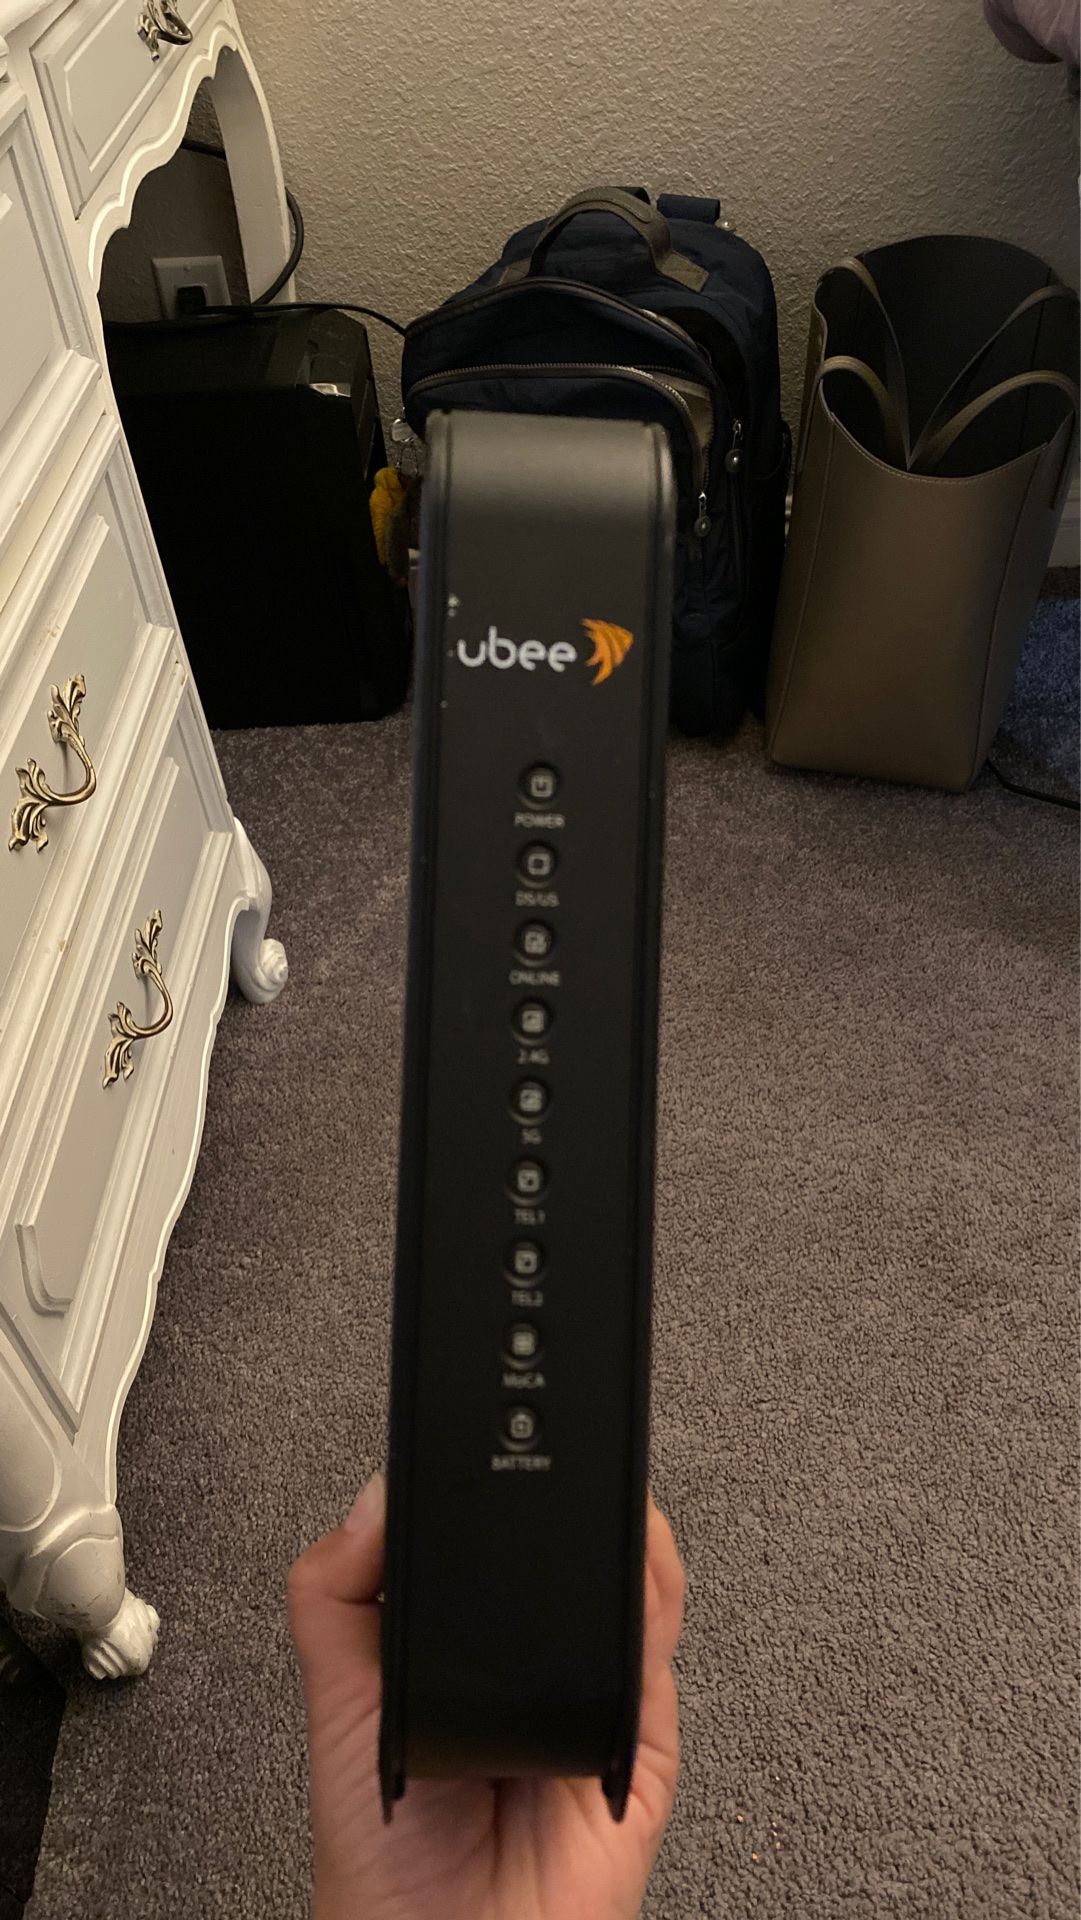 Ubee router